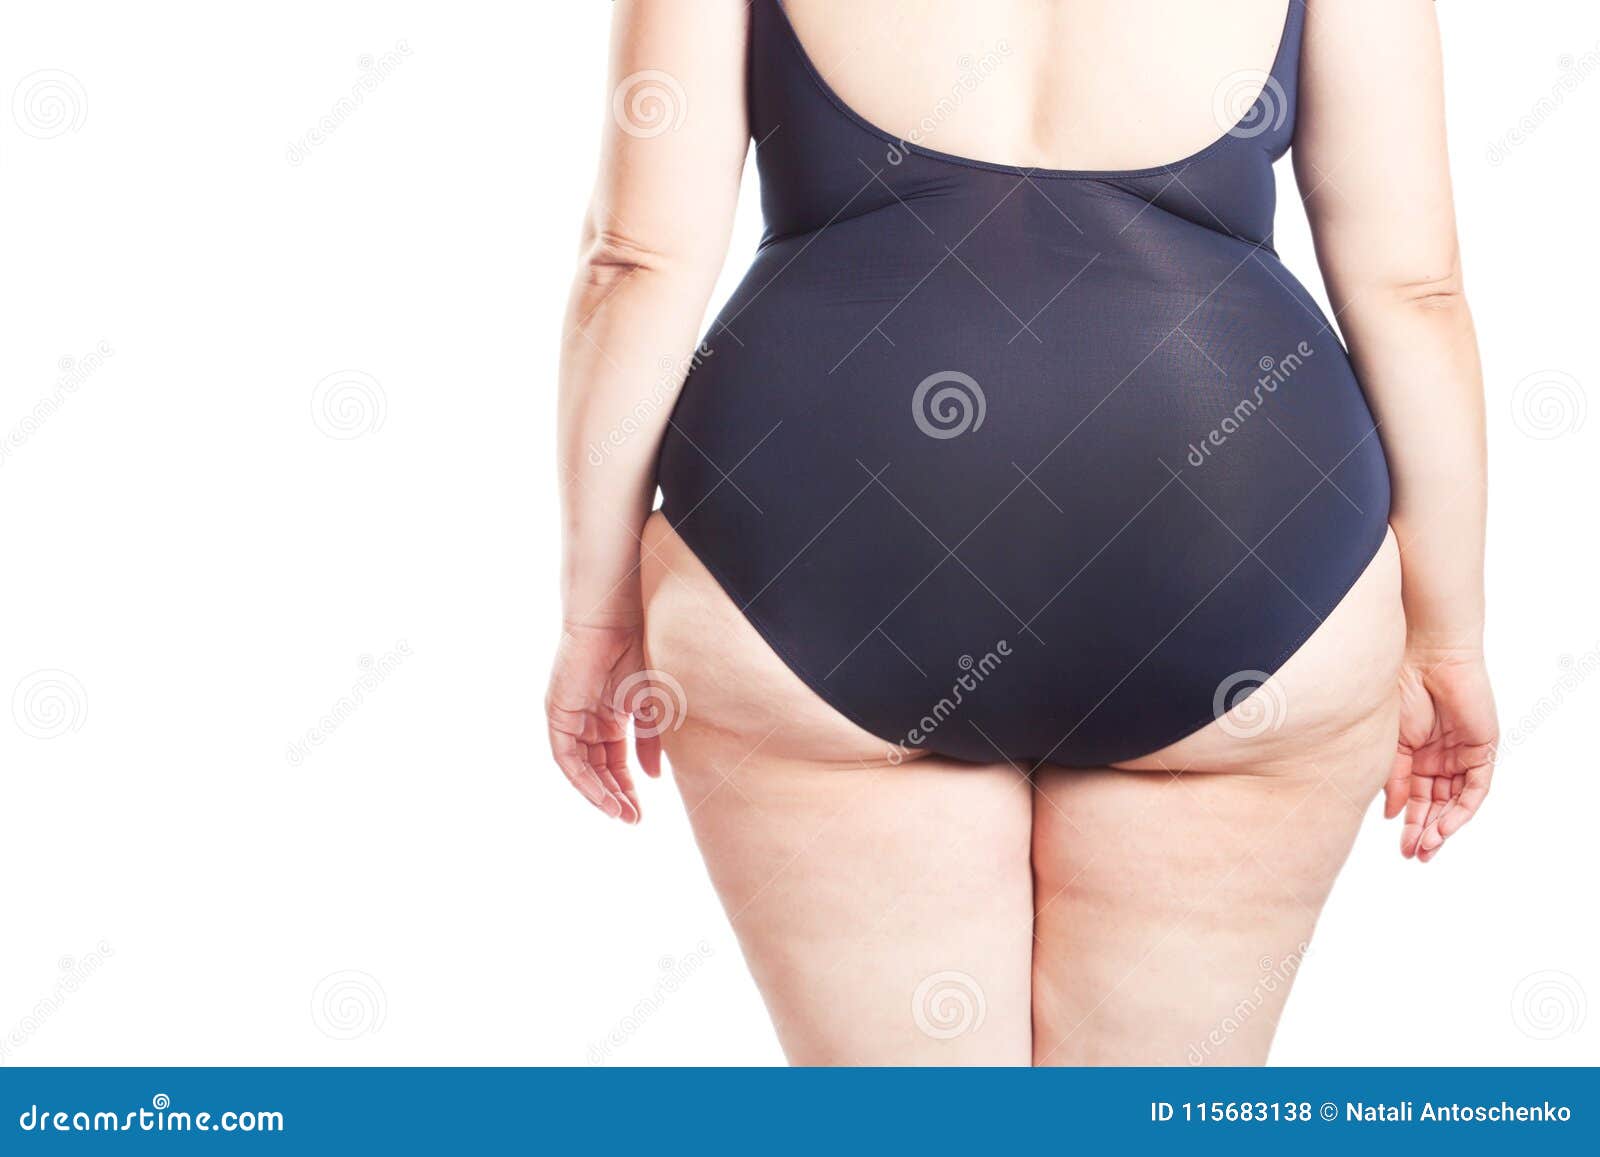 adigun idris recommends Fat Women In Swim Suits